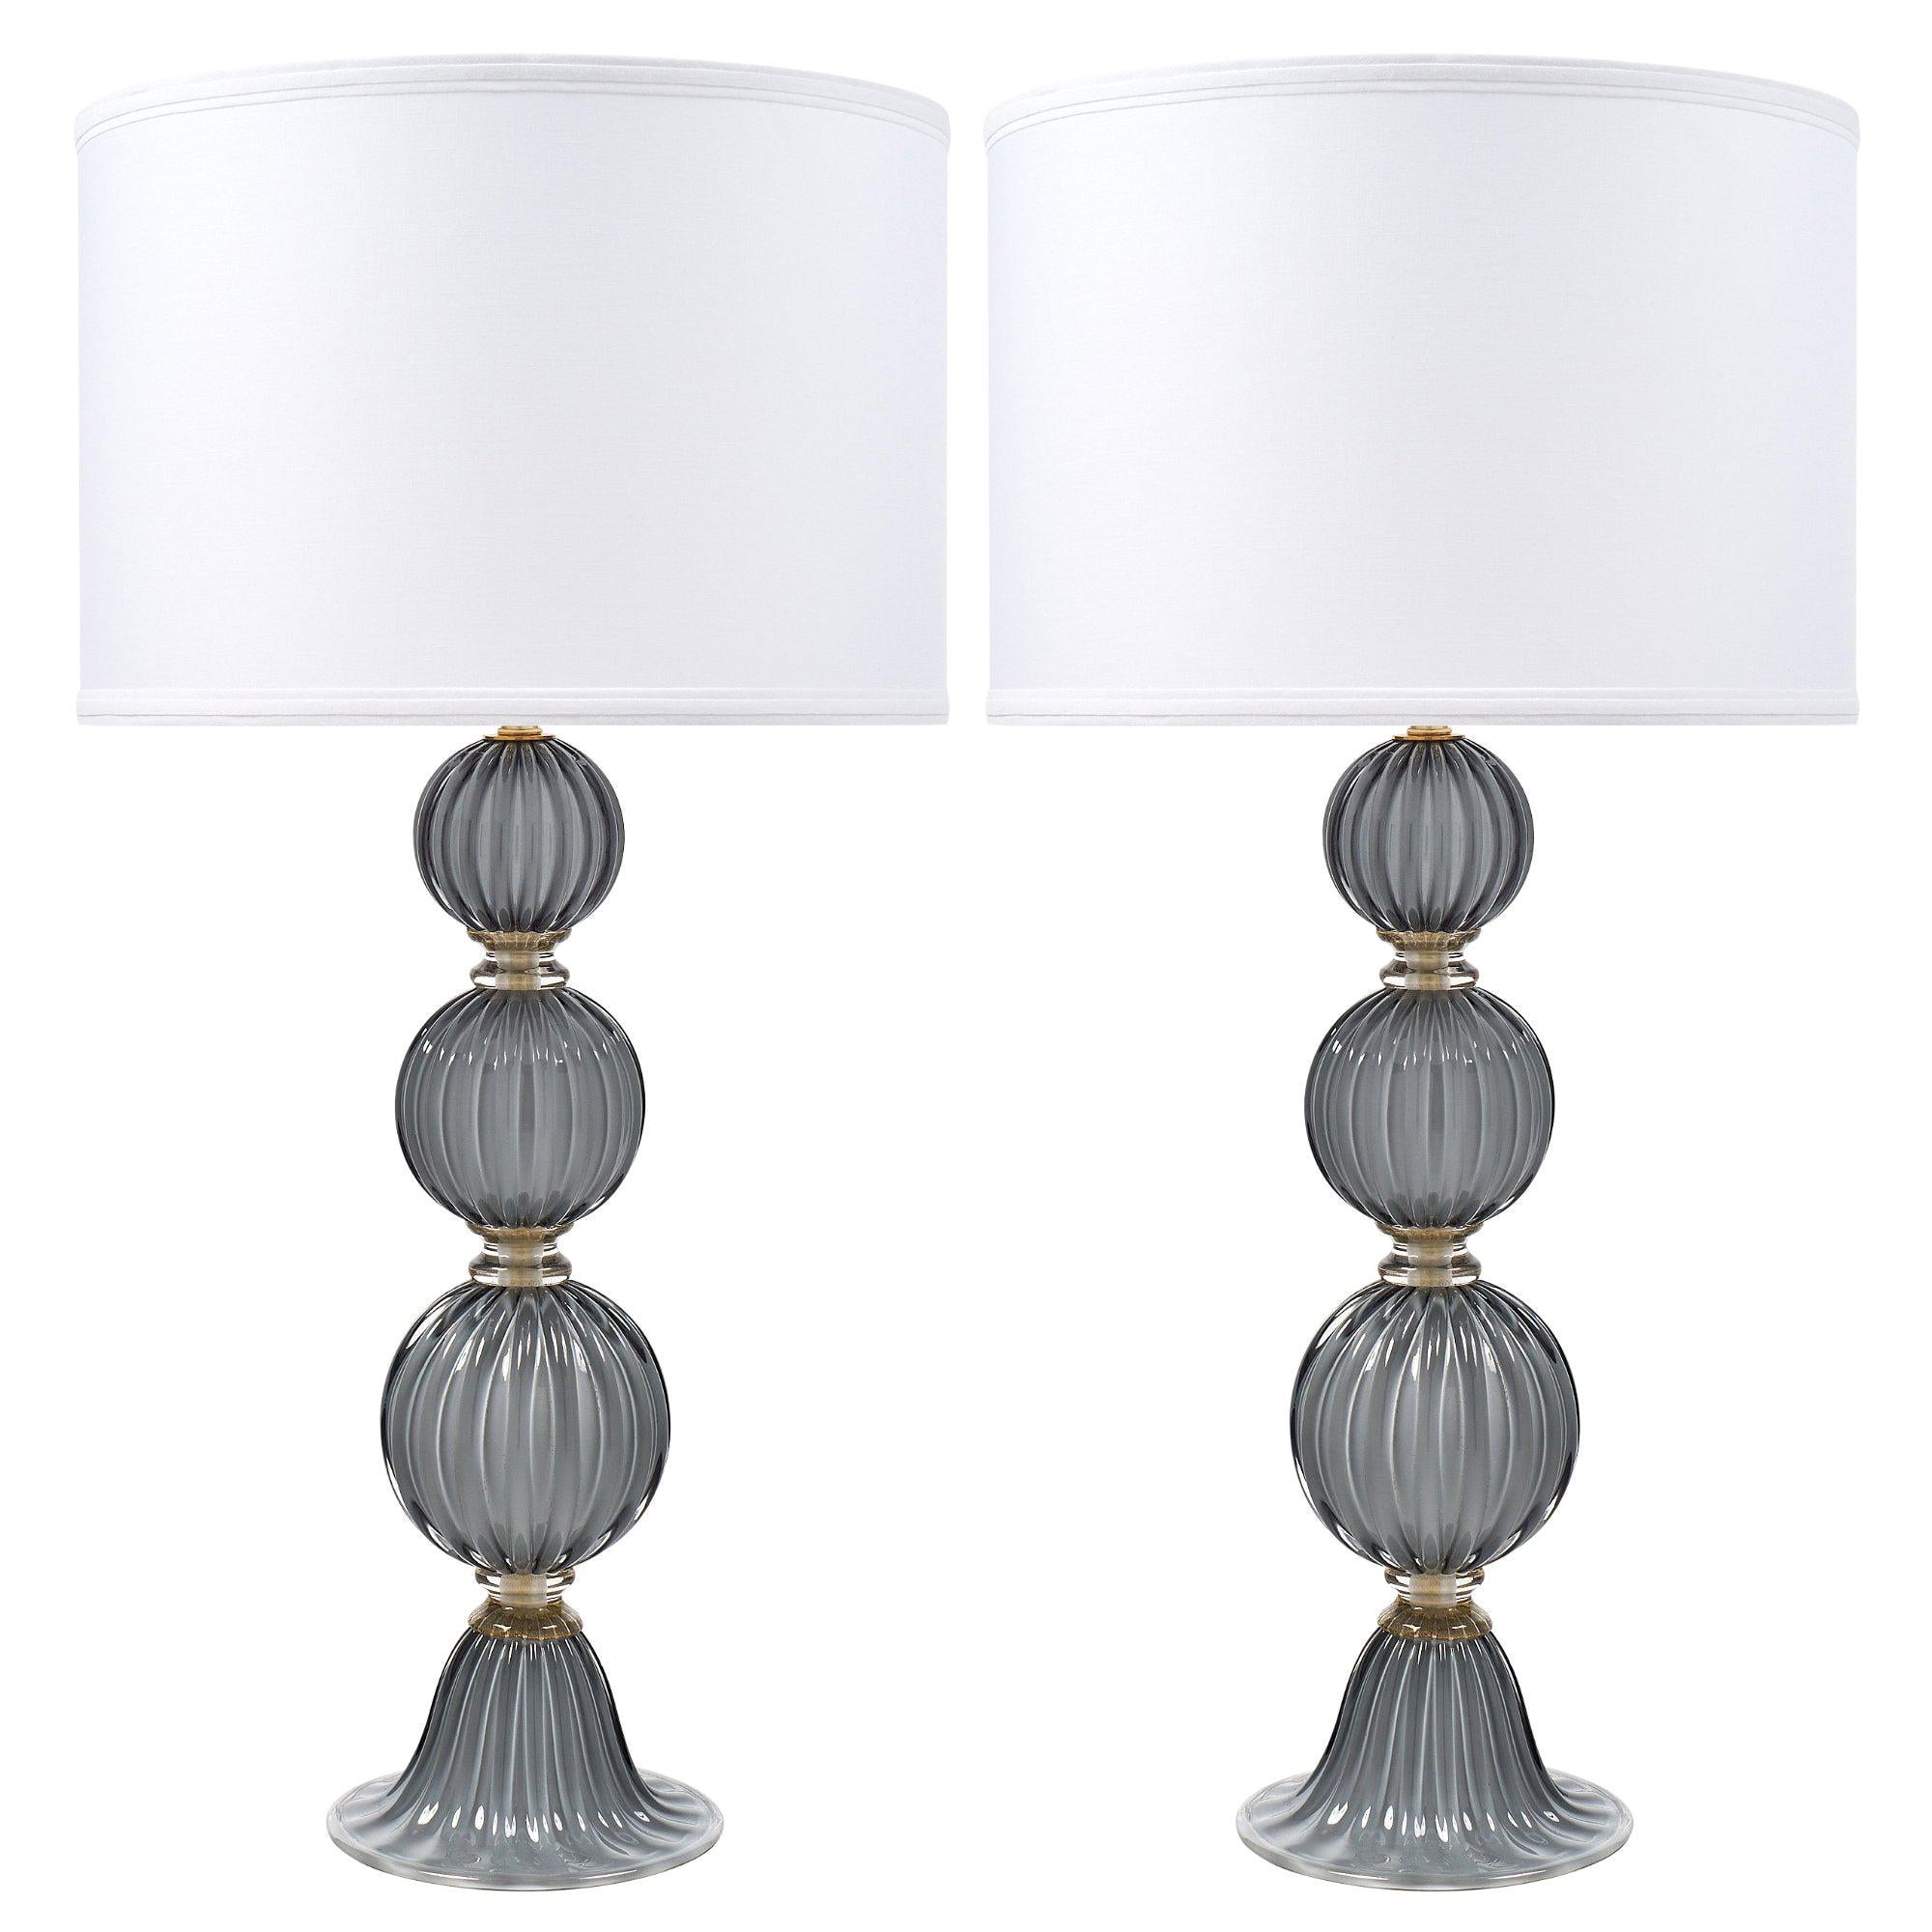 “Acciaio” Italian Murano Glass Lamps For Sale